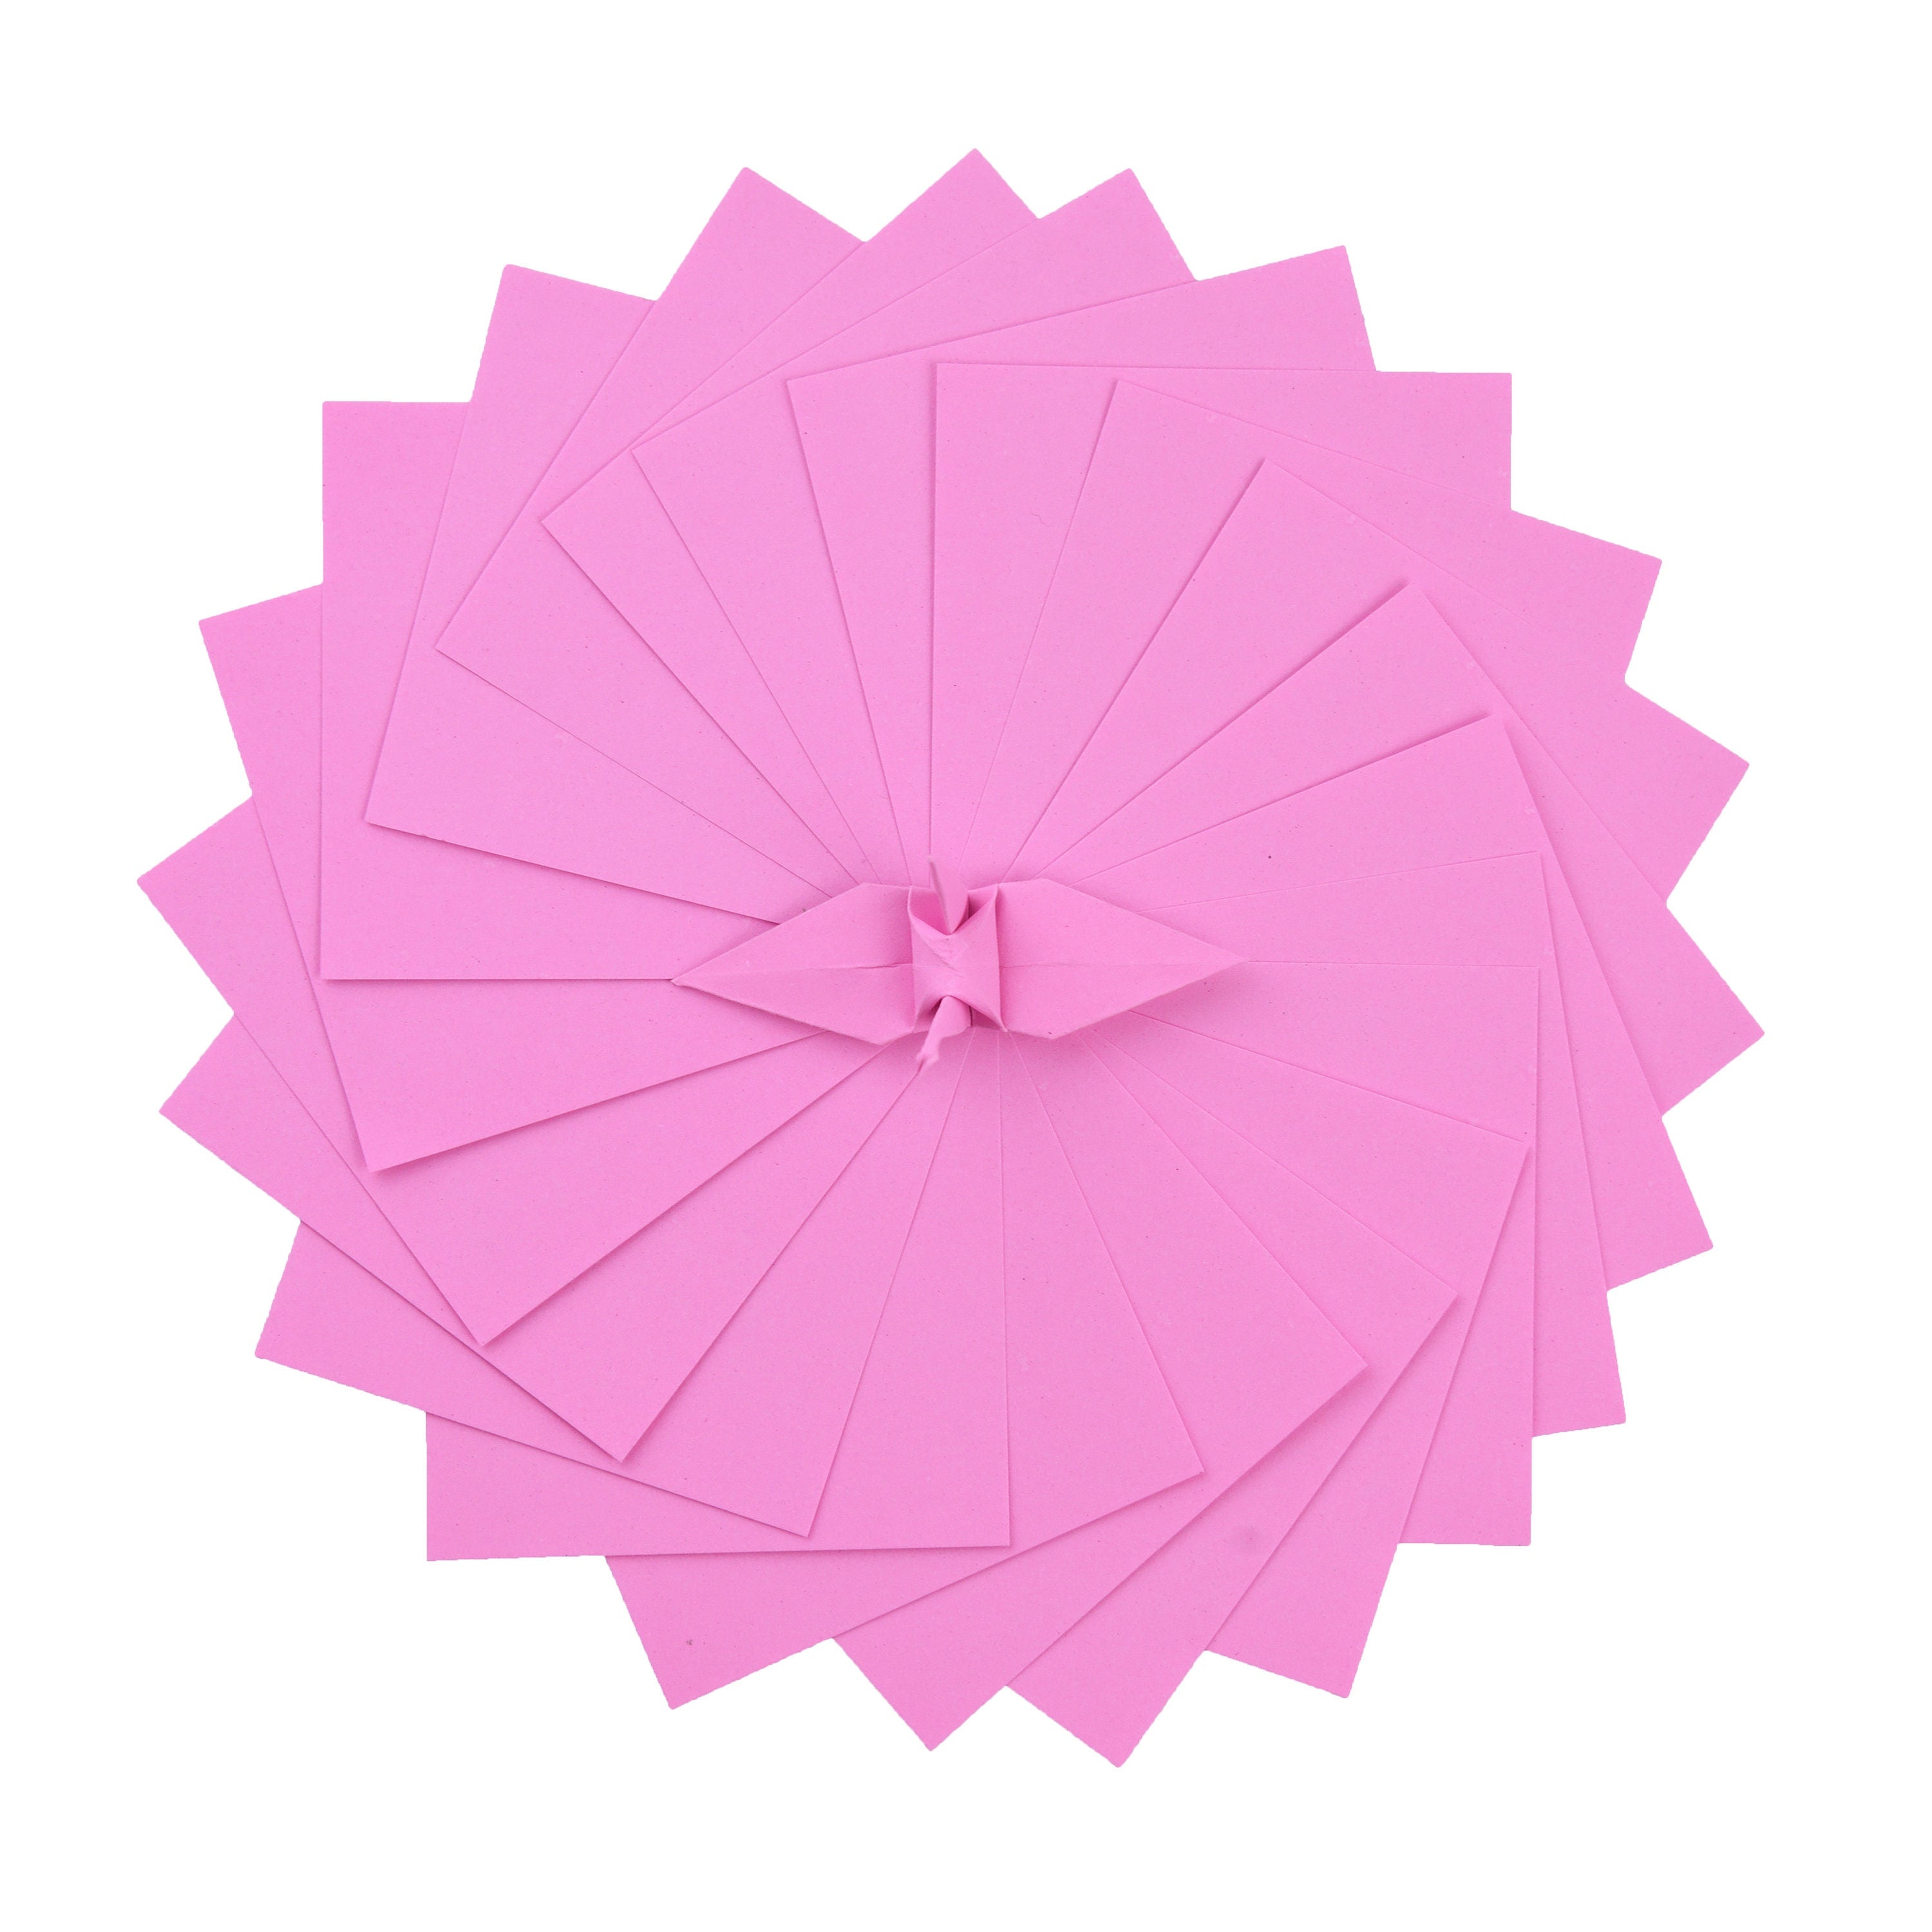 100 fogli di carta origami - 6x6 pollici - Confezione di carta quadrata per piegare, gru origami e decorazioni - S13